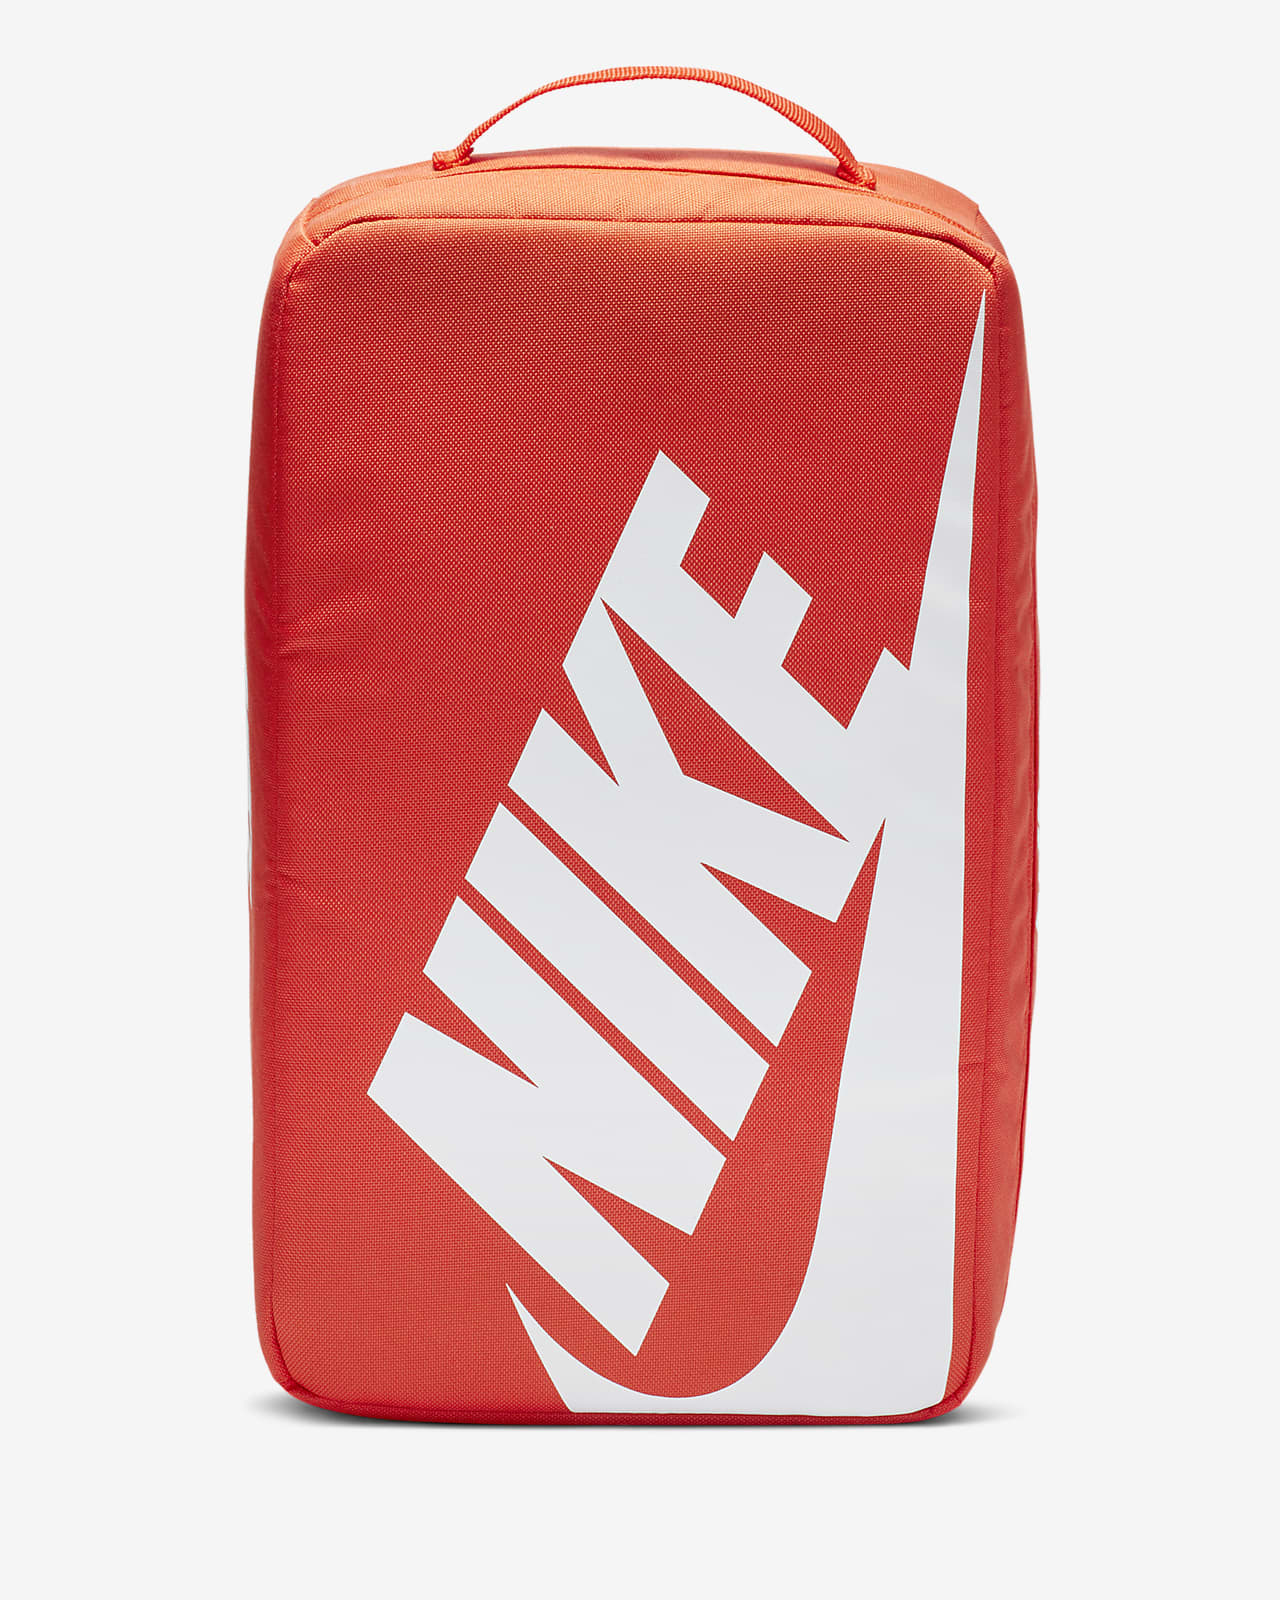 nike shoe box backpack